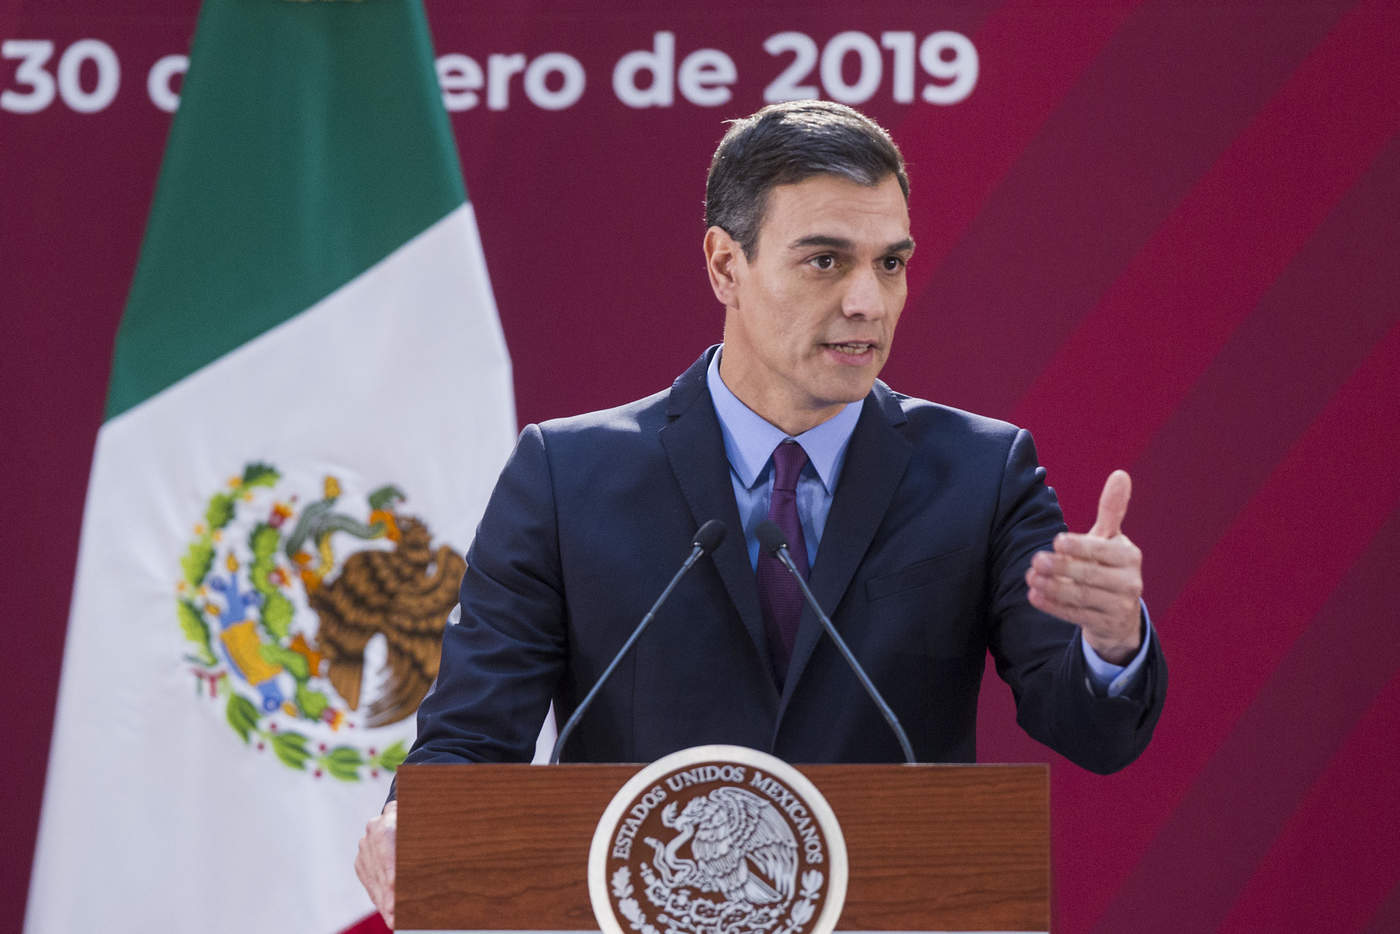 España luchará porque México siga como socio de la UE: Pedro Sánchez. Noticias en tiempo real